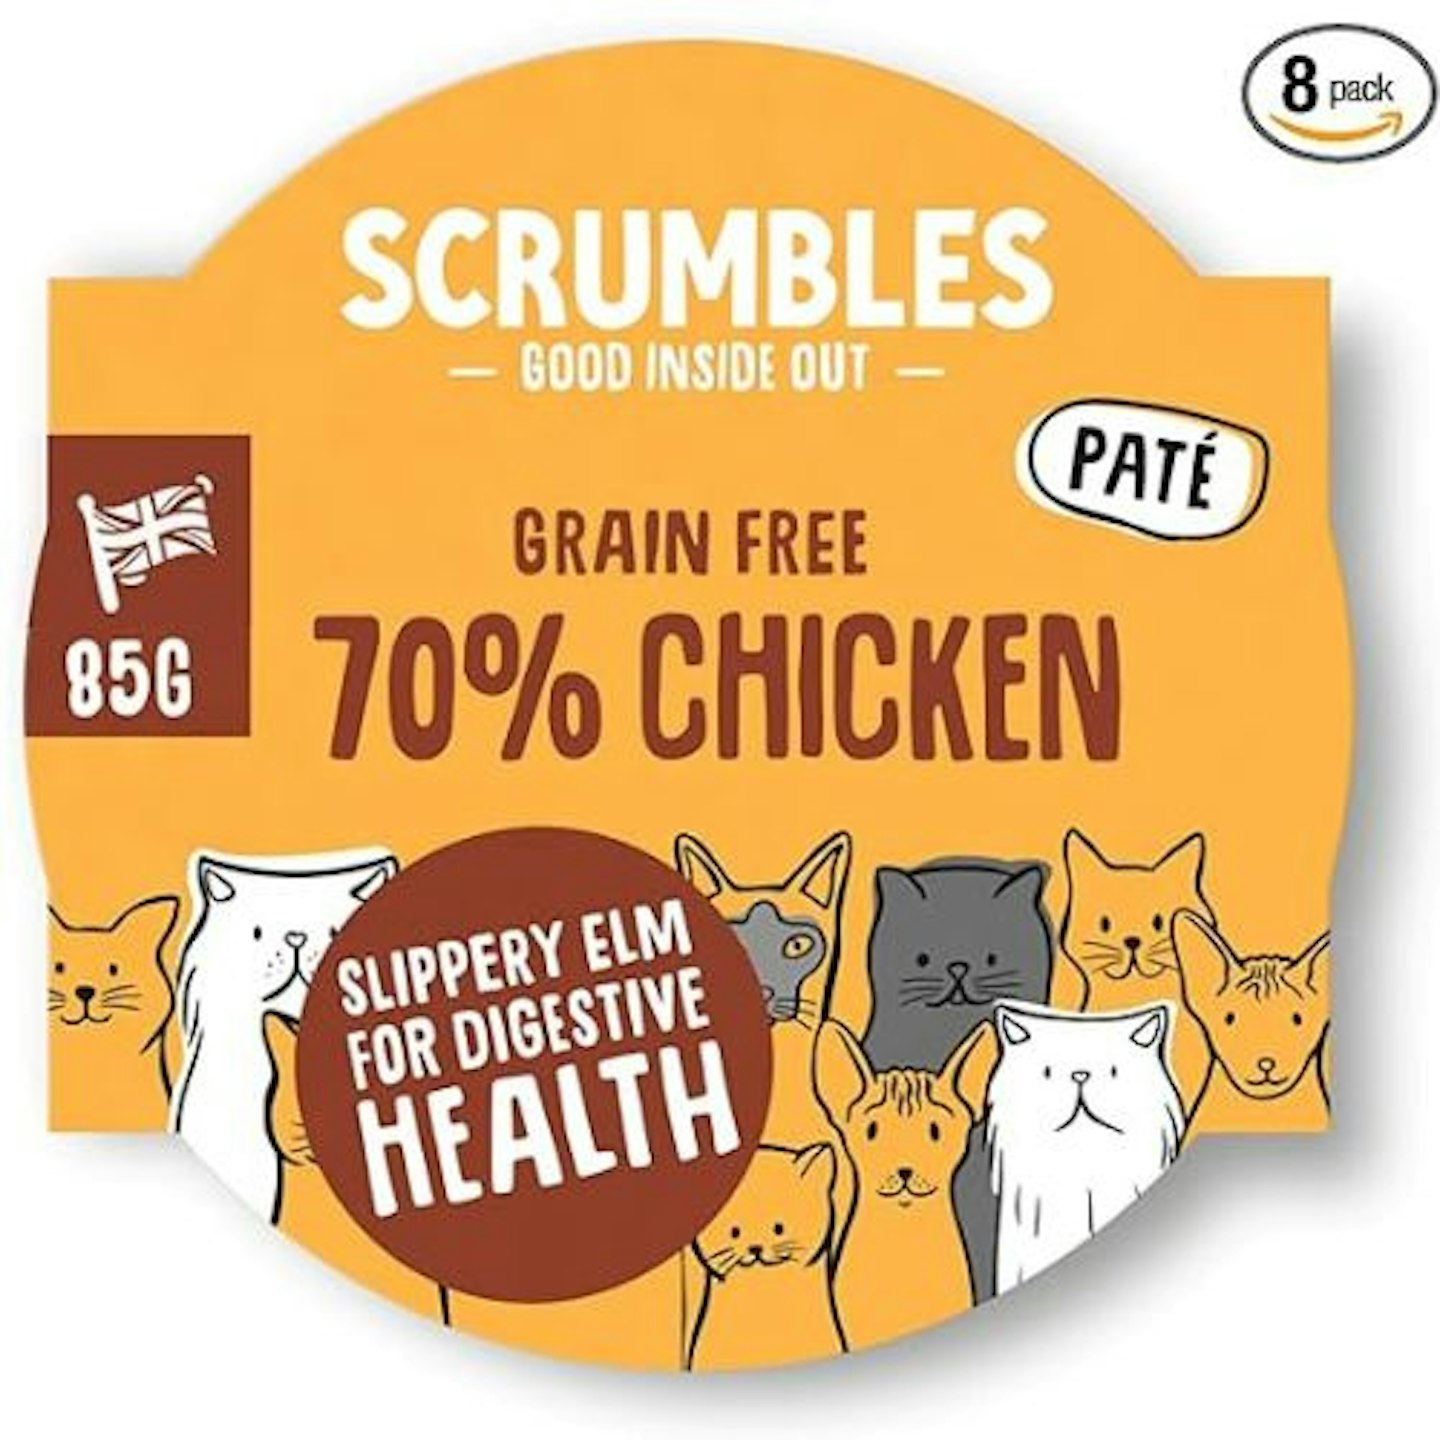 Scrumbles Grain Free 70% Chicken Wet Cat Food